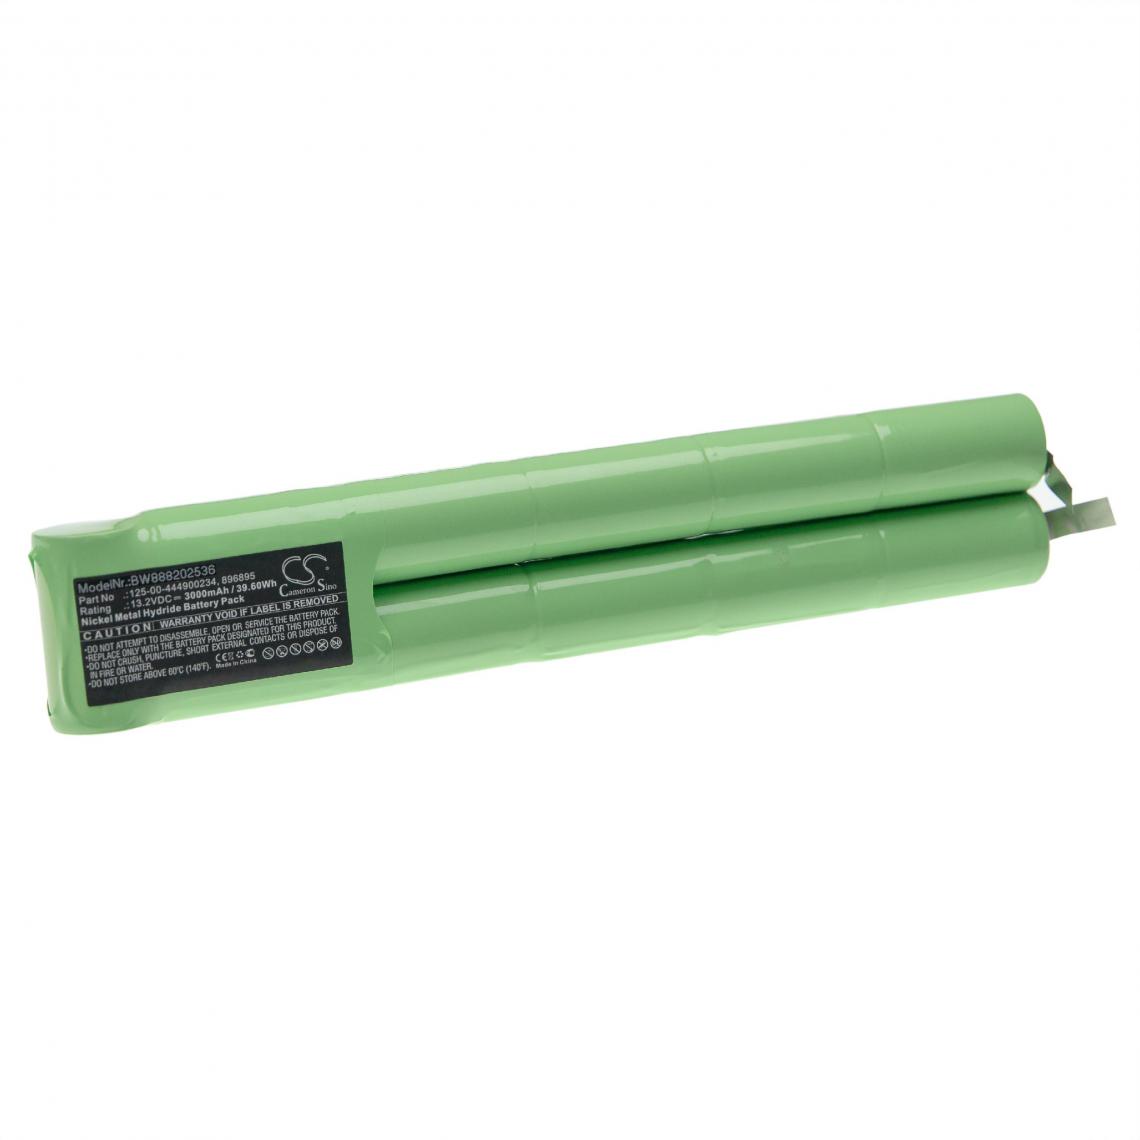 Vhbw - vhbw Batterie remplacement pour Datex 125-00-444900234, 896895 pour appareil médical (3000mAh, 13,2V, NiMH) - Piles spécifiques